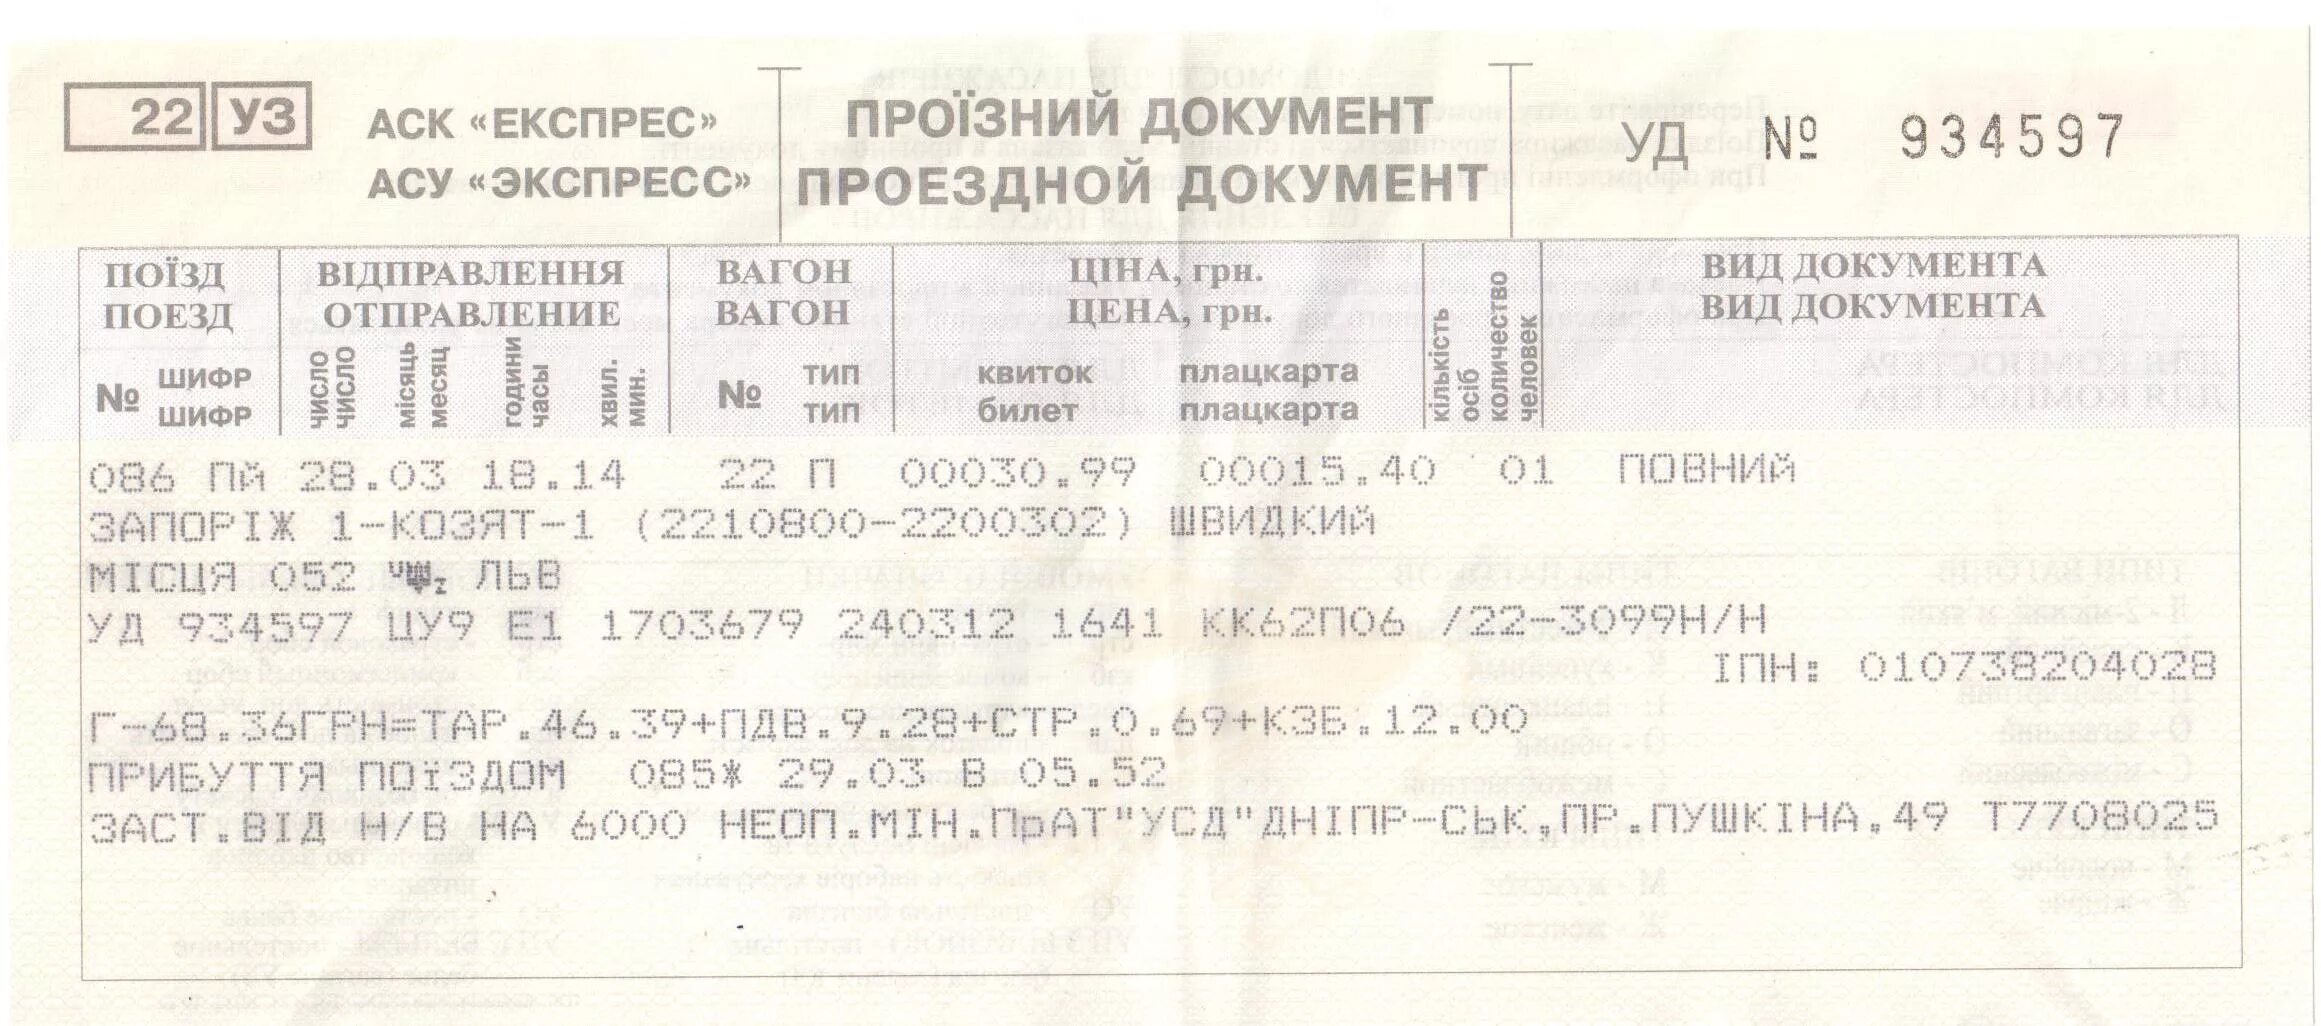 Жд билеты саки. ЖД билеты. Билет на поезд. Билеты на поезд Украина. Дубликат железнодорожного билета.